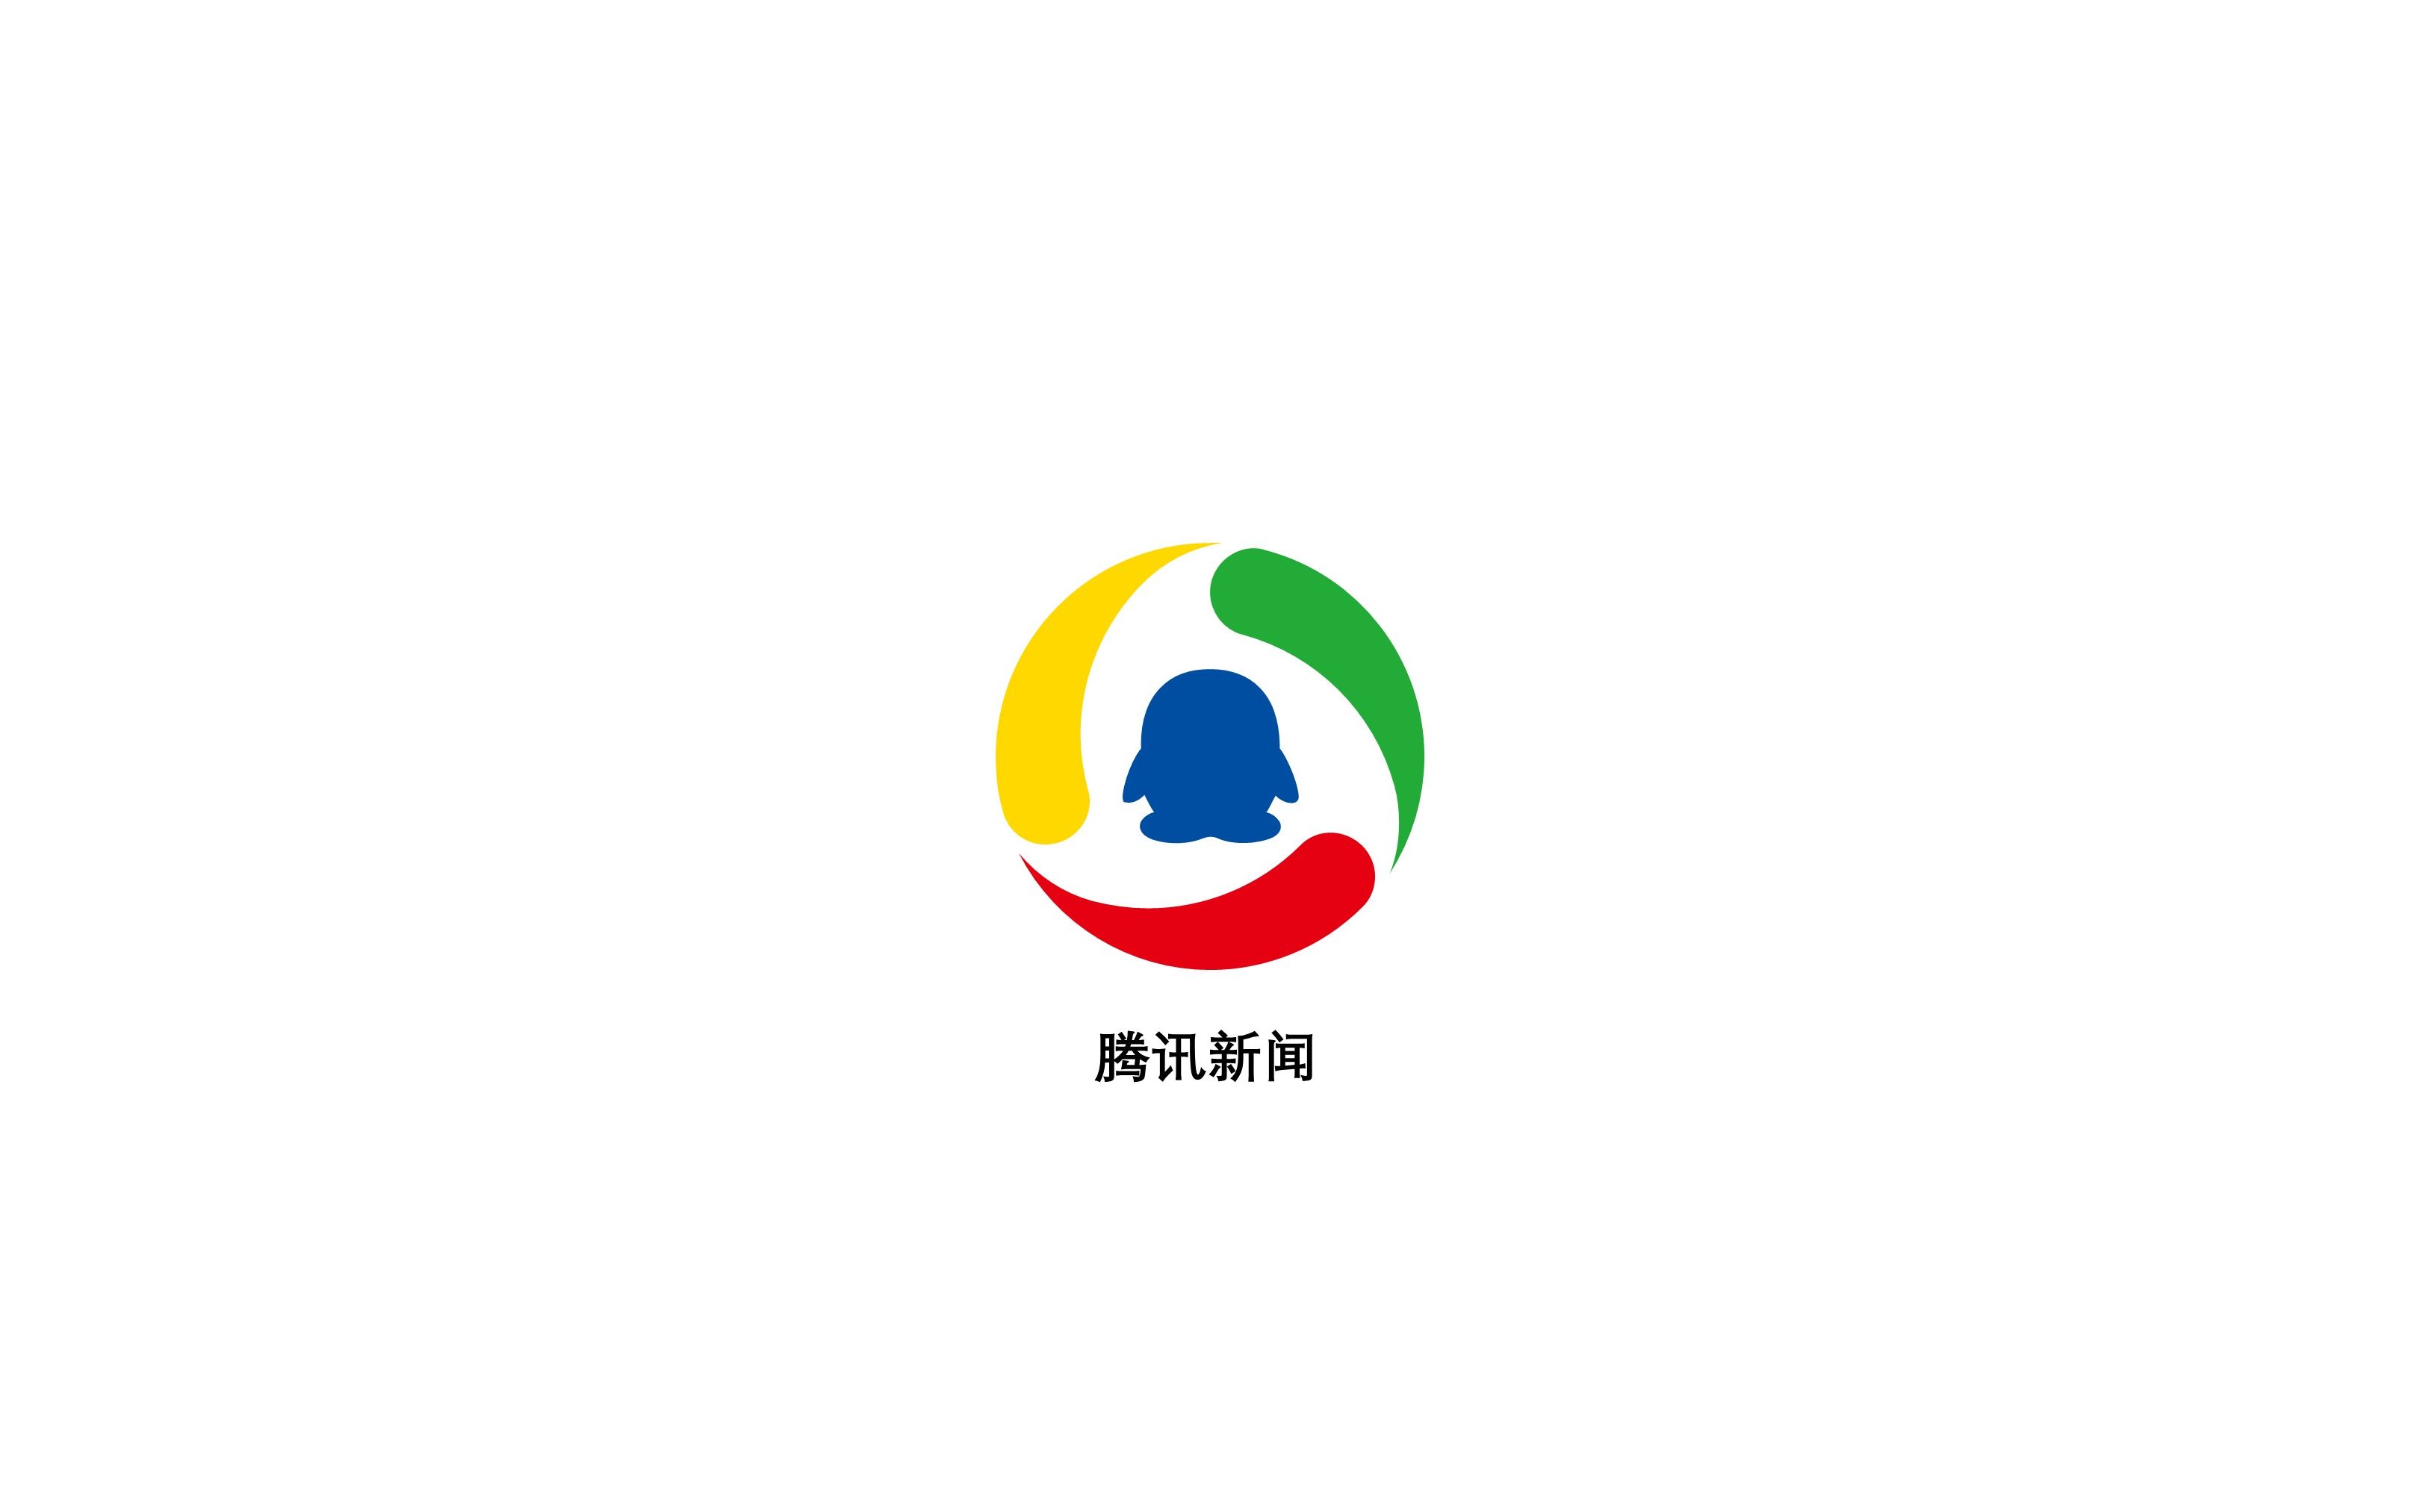 【教程】利用cad绘制腾讯网logo